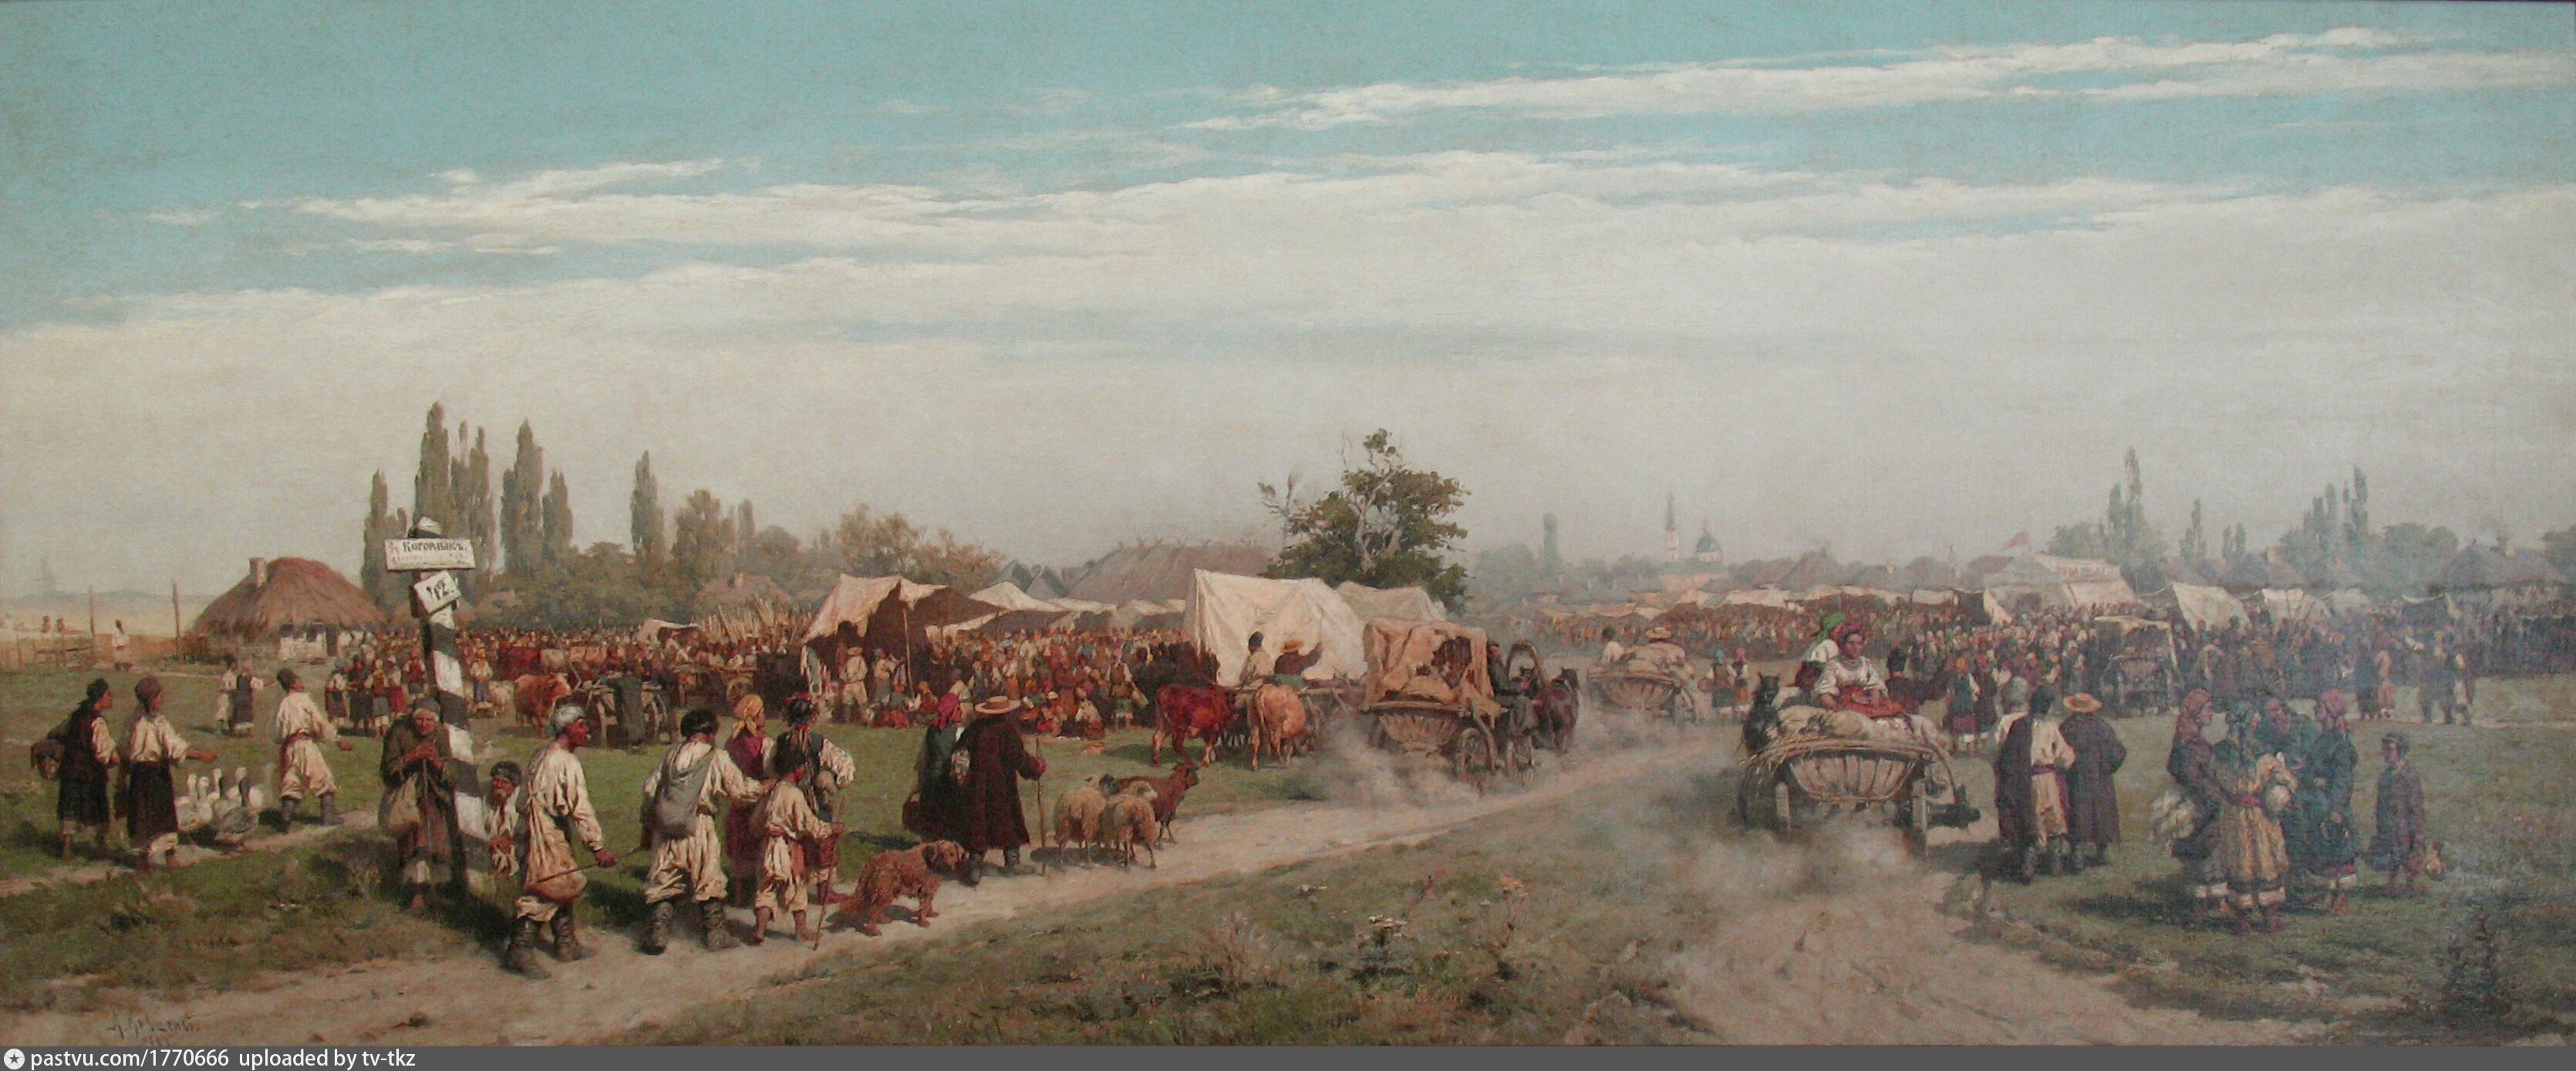 Украинцы в 18 веке. Кившенко ярмарка на Украине. (1882).